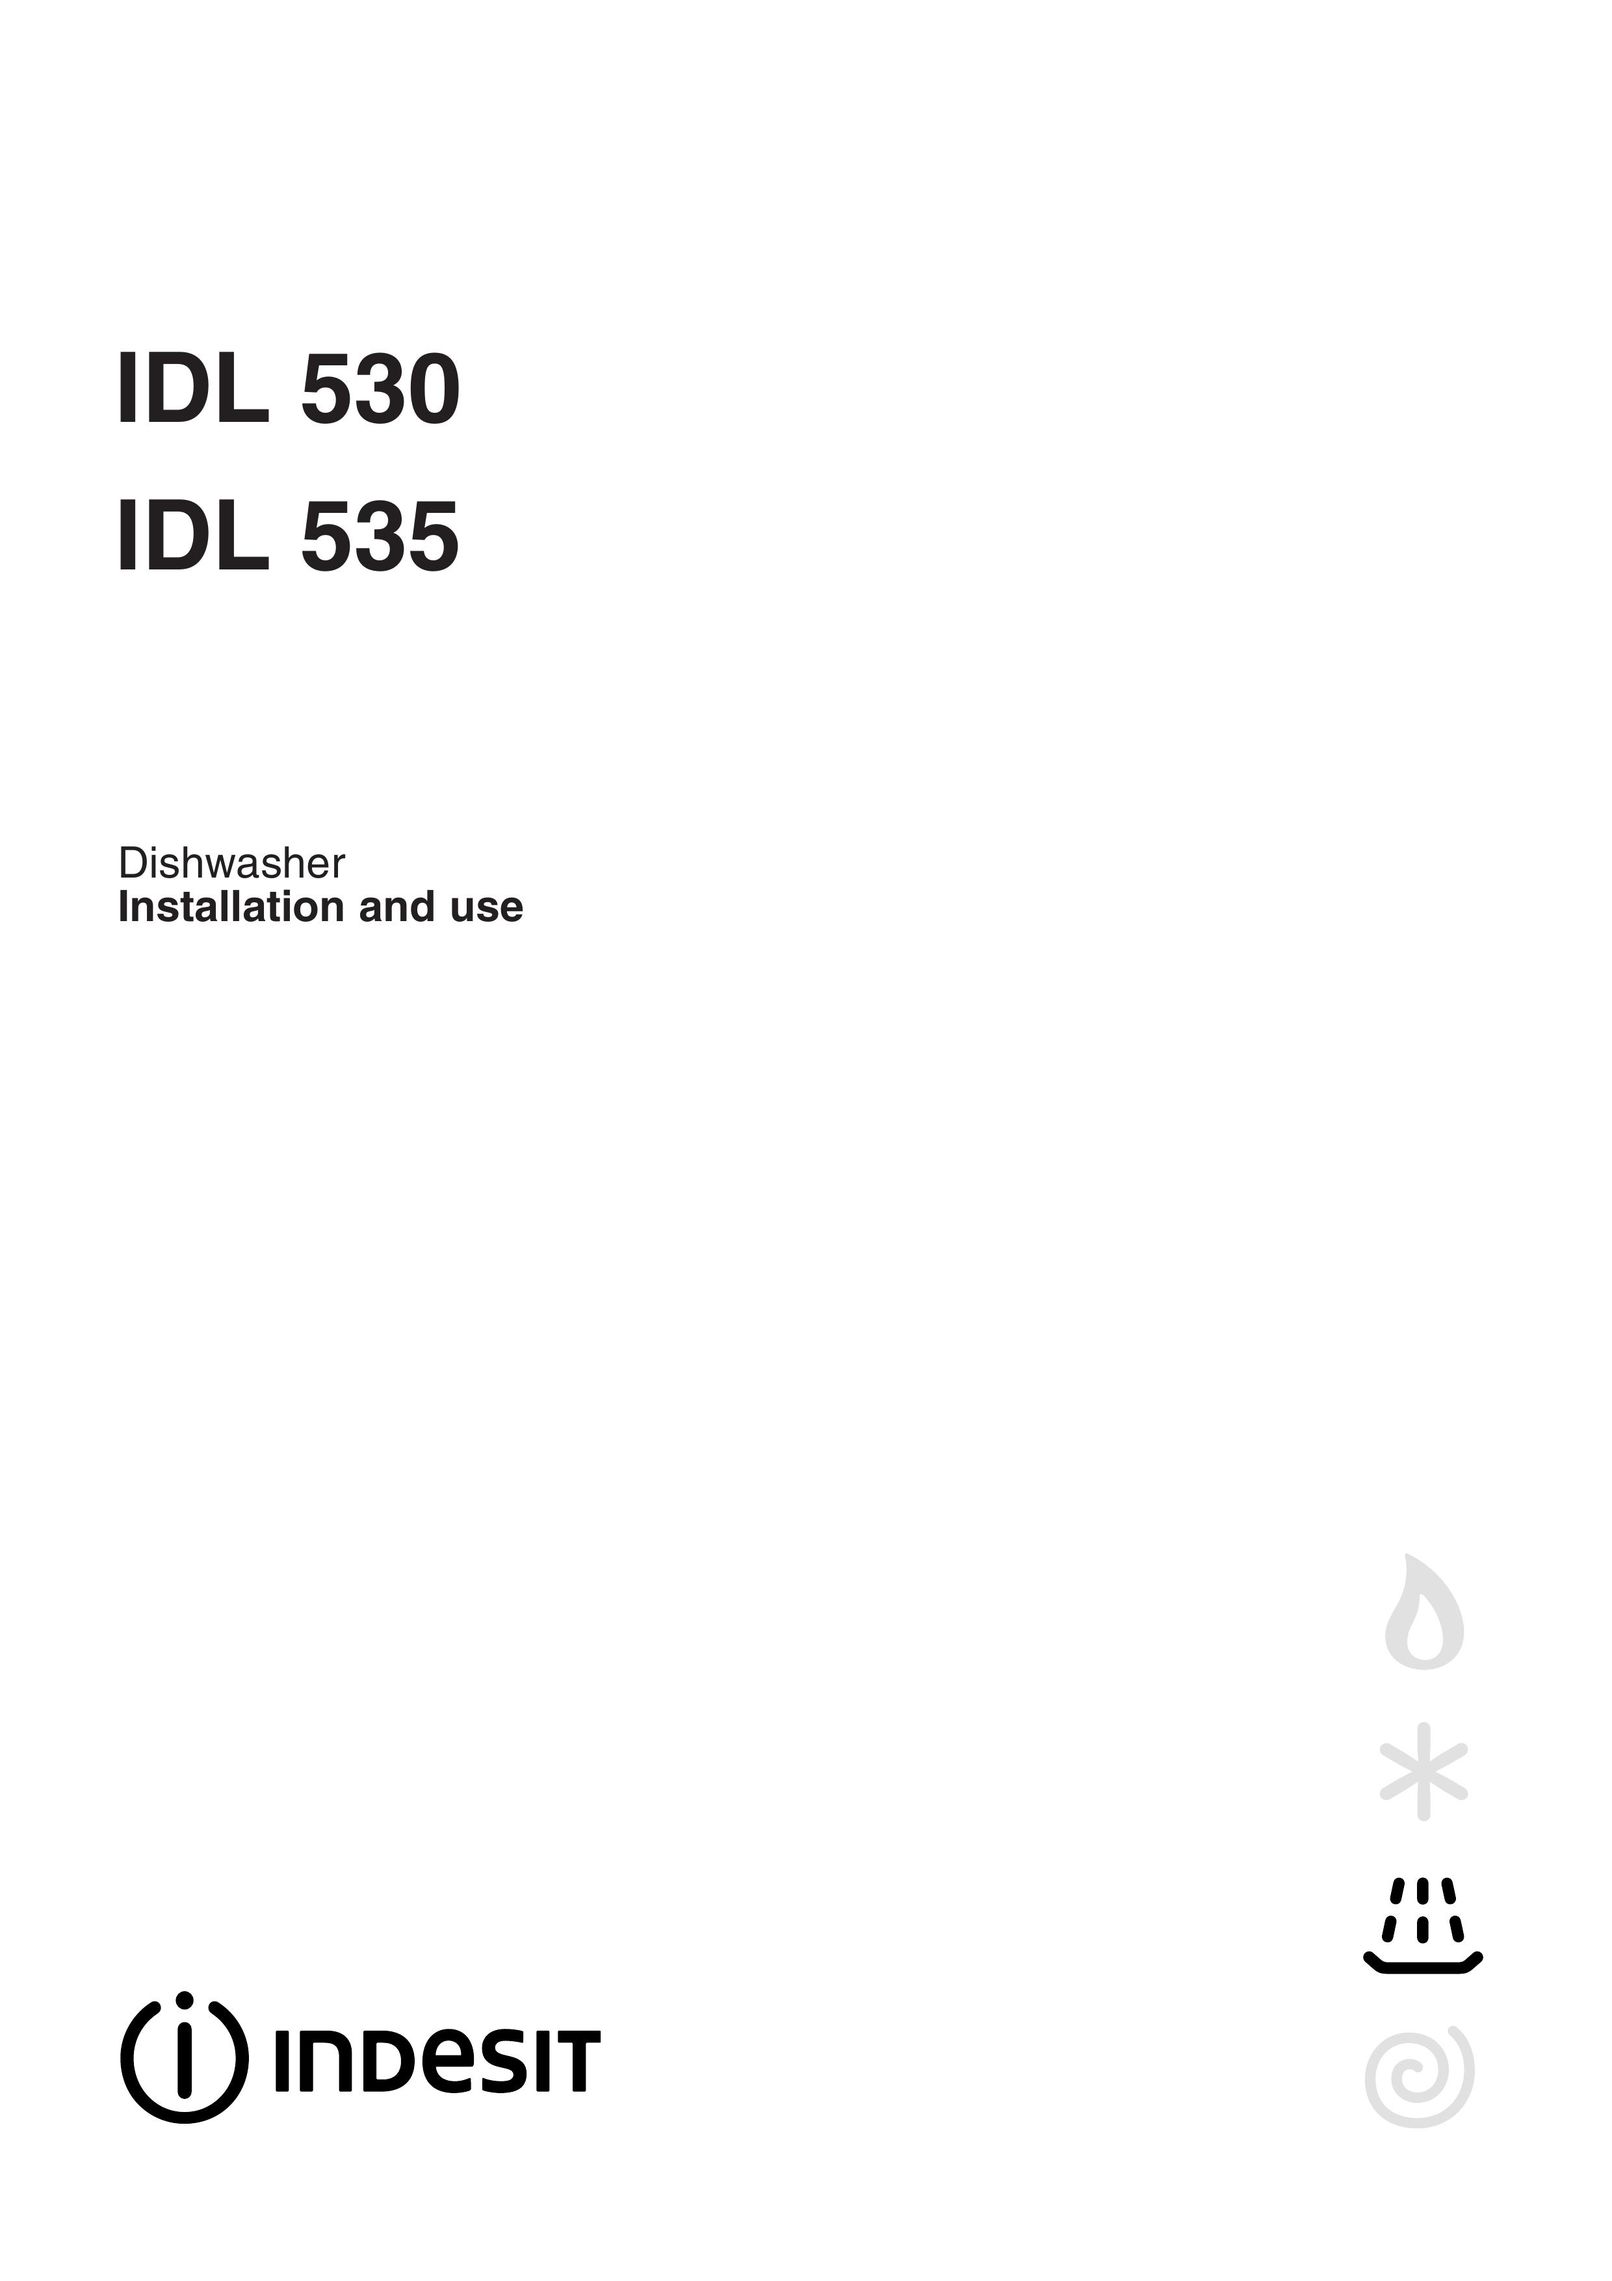 Indesit IDL 530 Dishwasher User Manual